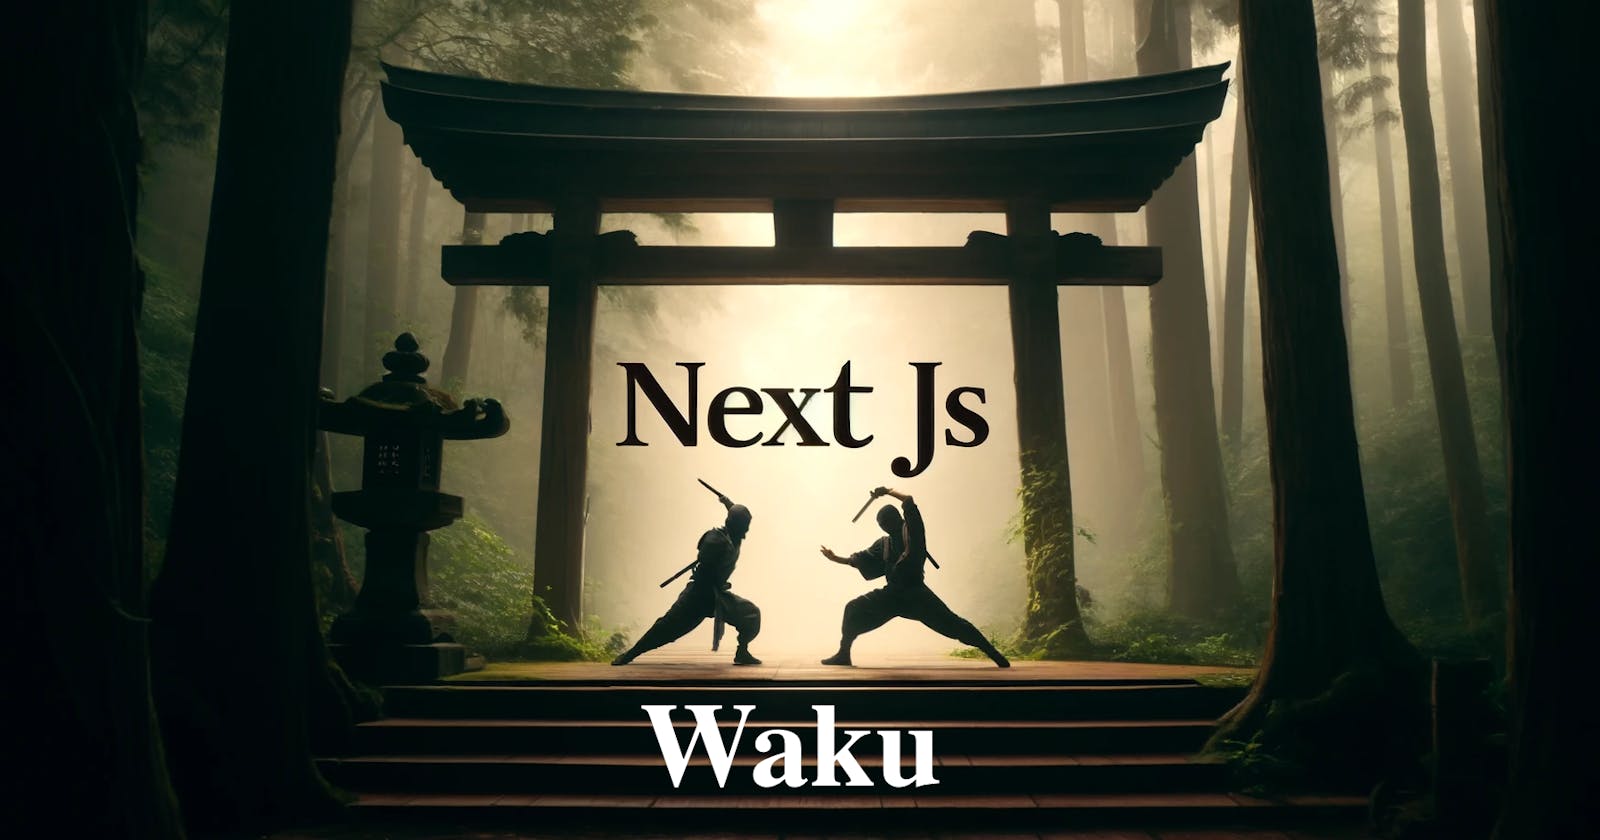 Is Waku the new NextJS?